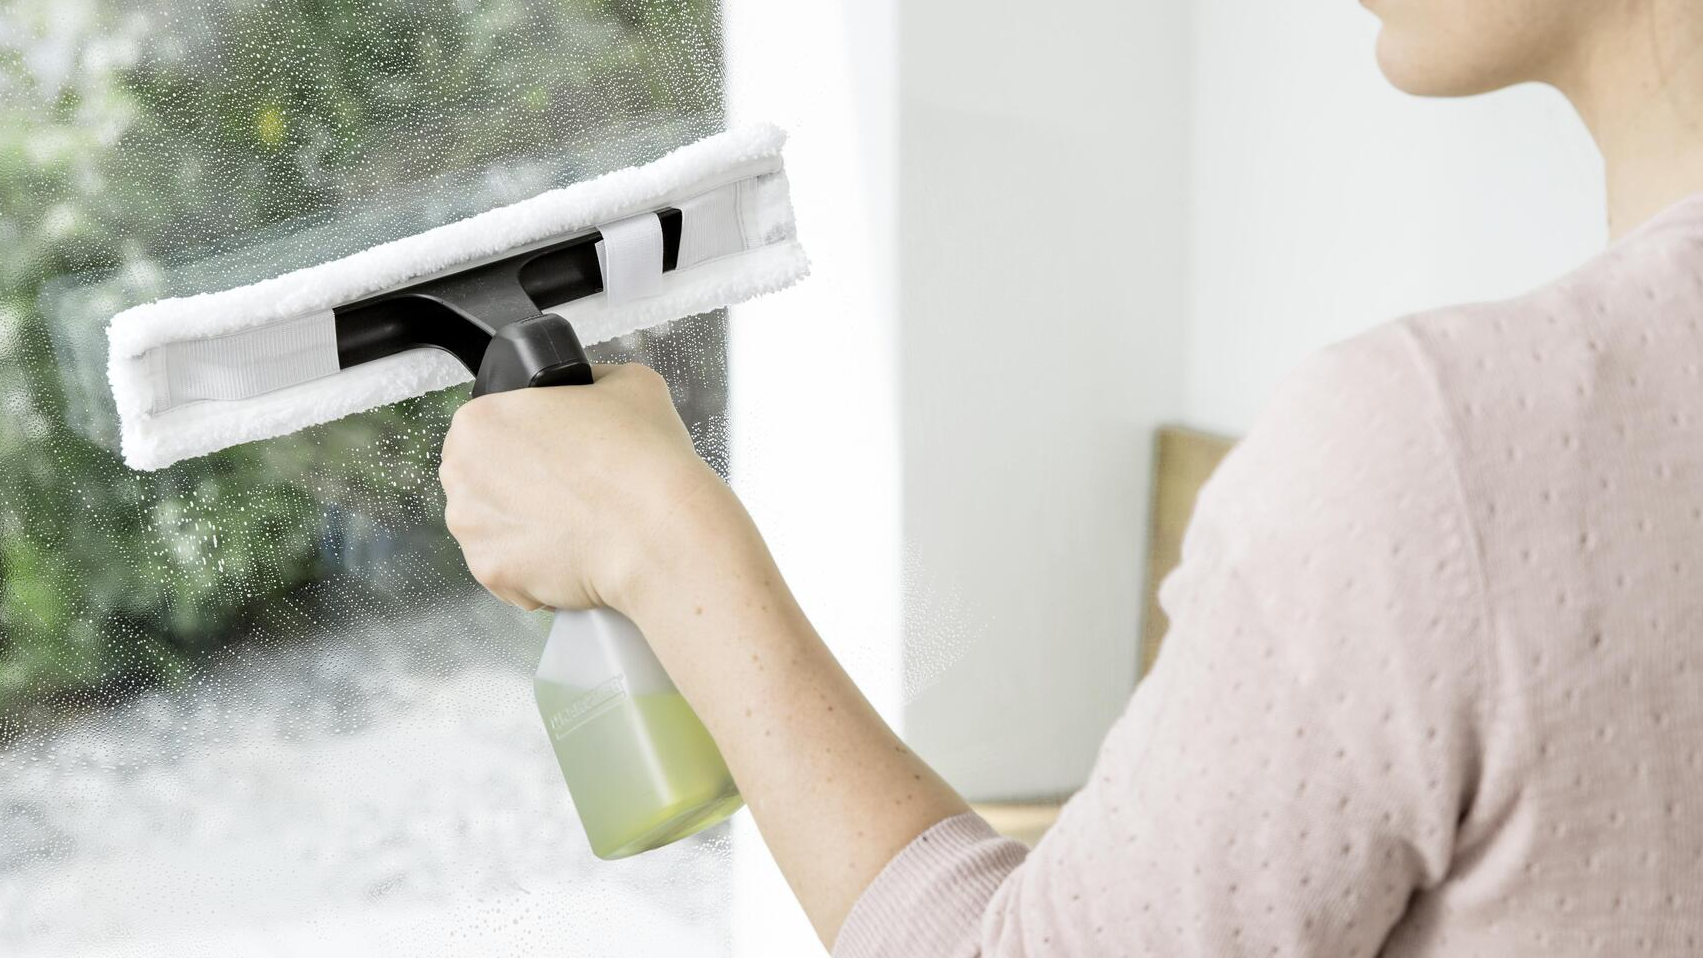 La forma correcta de limpiar una ventana por fuera